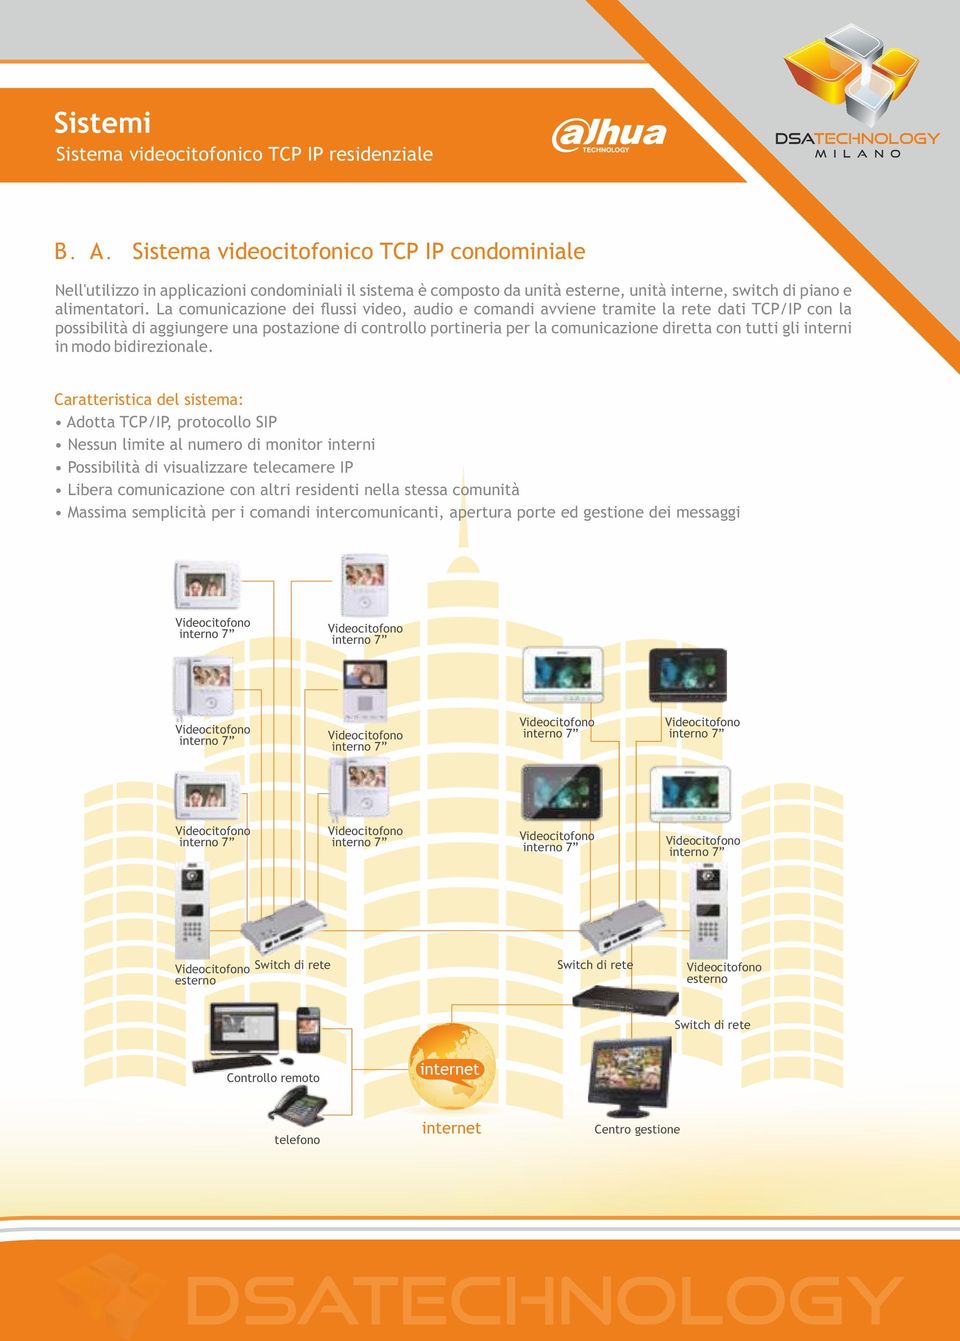 La comunicazione dei flussi video, audio e comandi avviene tramite la rete dati TCP/IP con la possibilità di aggiungere una postazione di controllo portineria per la comunicazione diretta con tutti